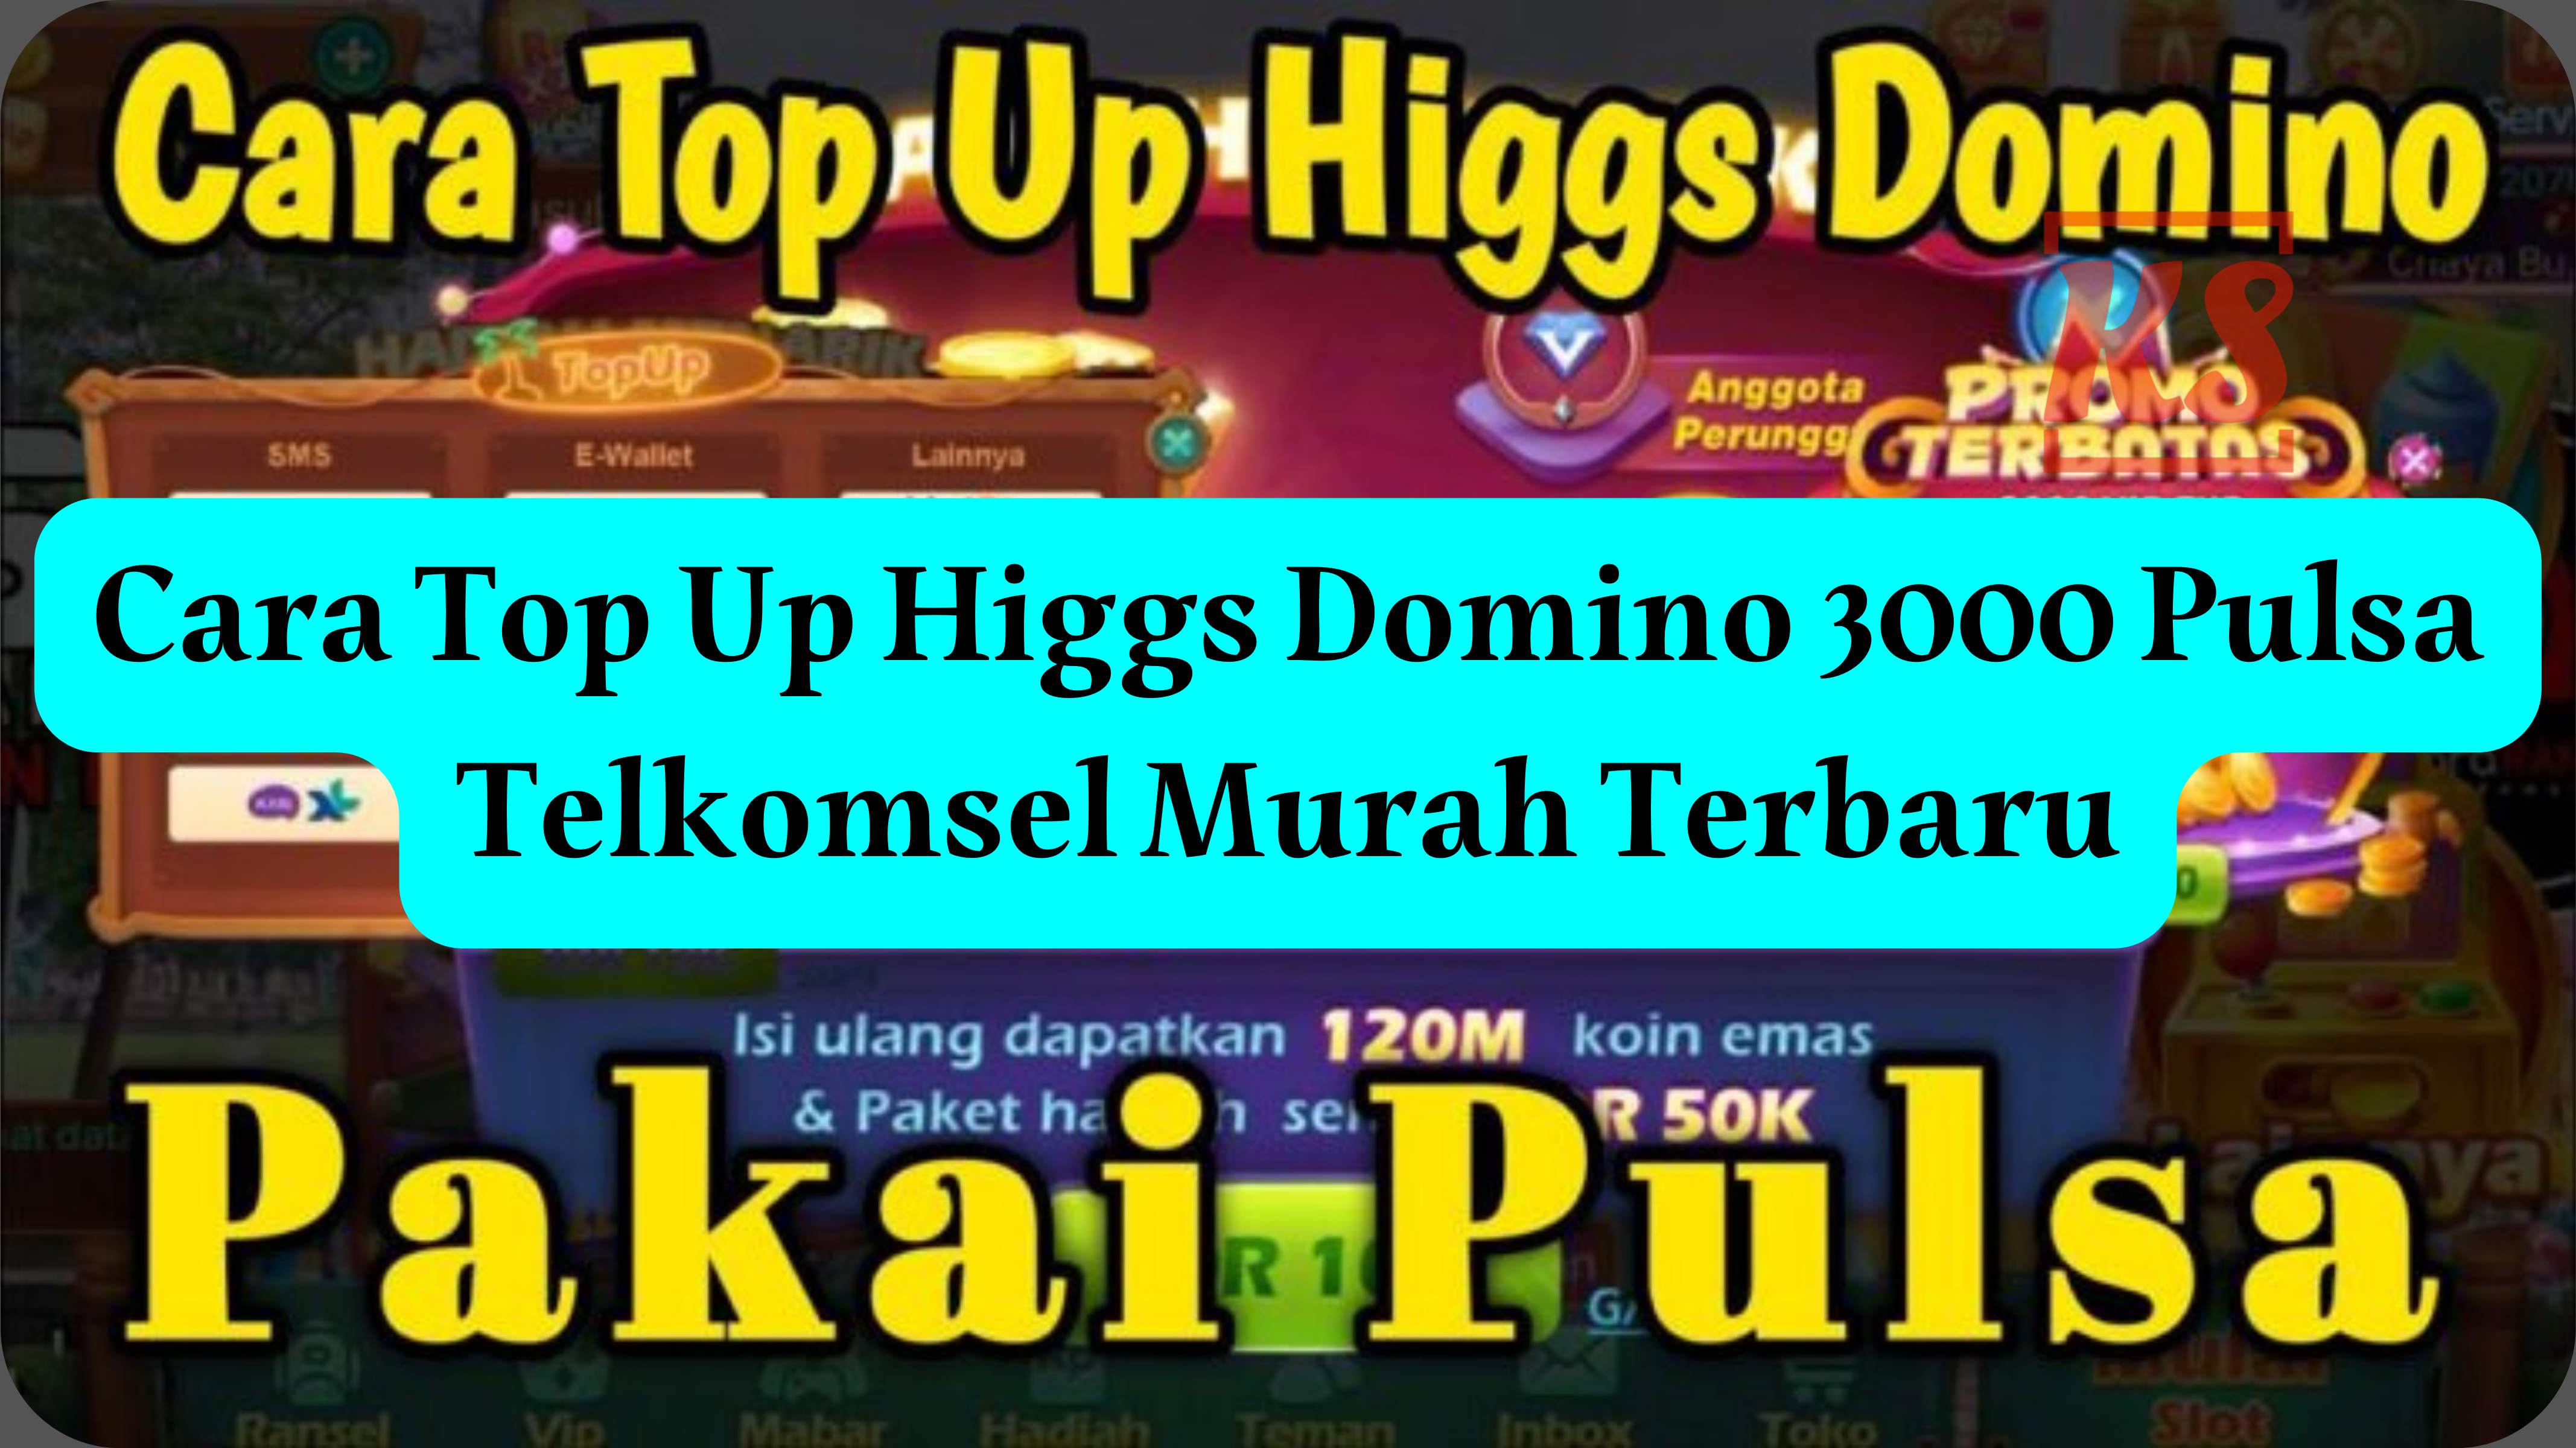 Cara Top Up Higgs Domino 3000 Pulsa Telkomsel Murah Terbaru